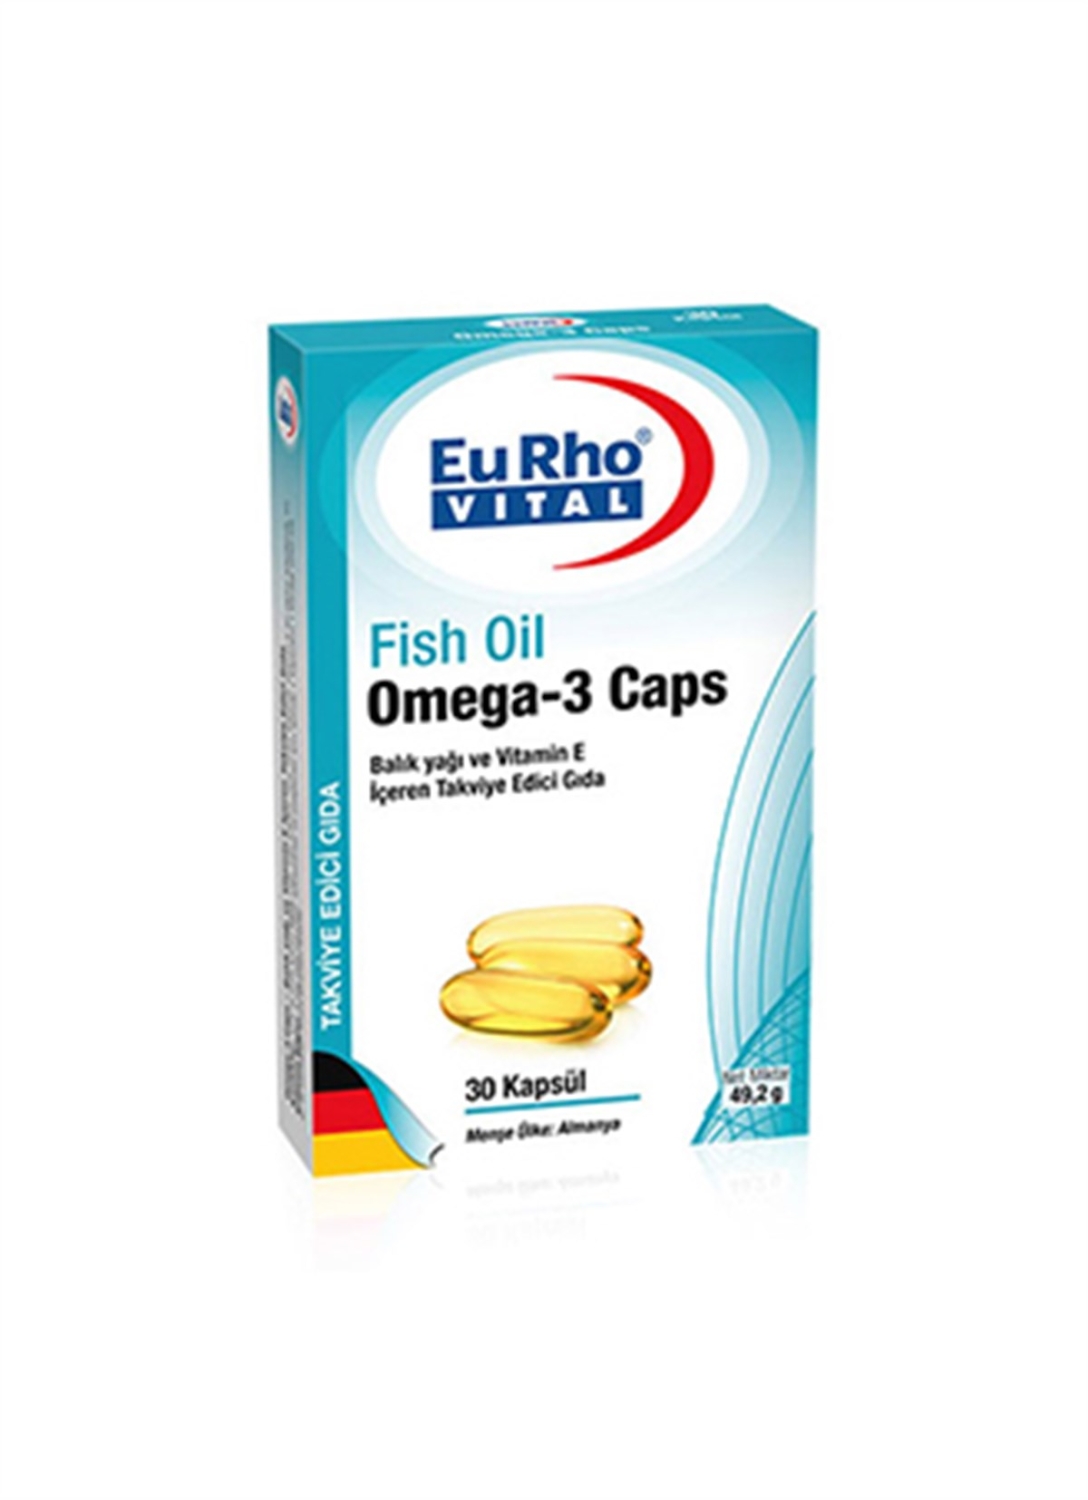 EuRho Vital Omega-3 Caps 30 Kapsül - 1